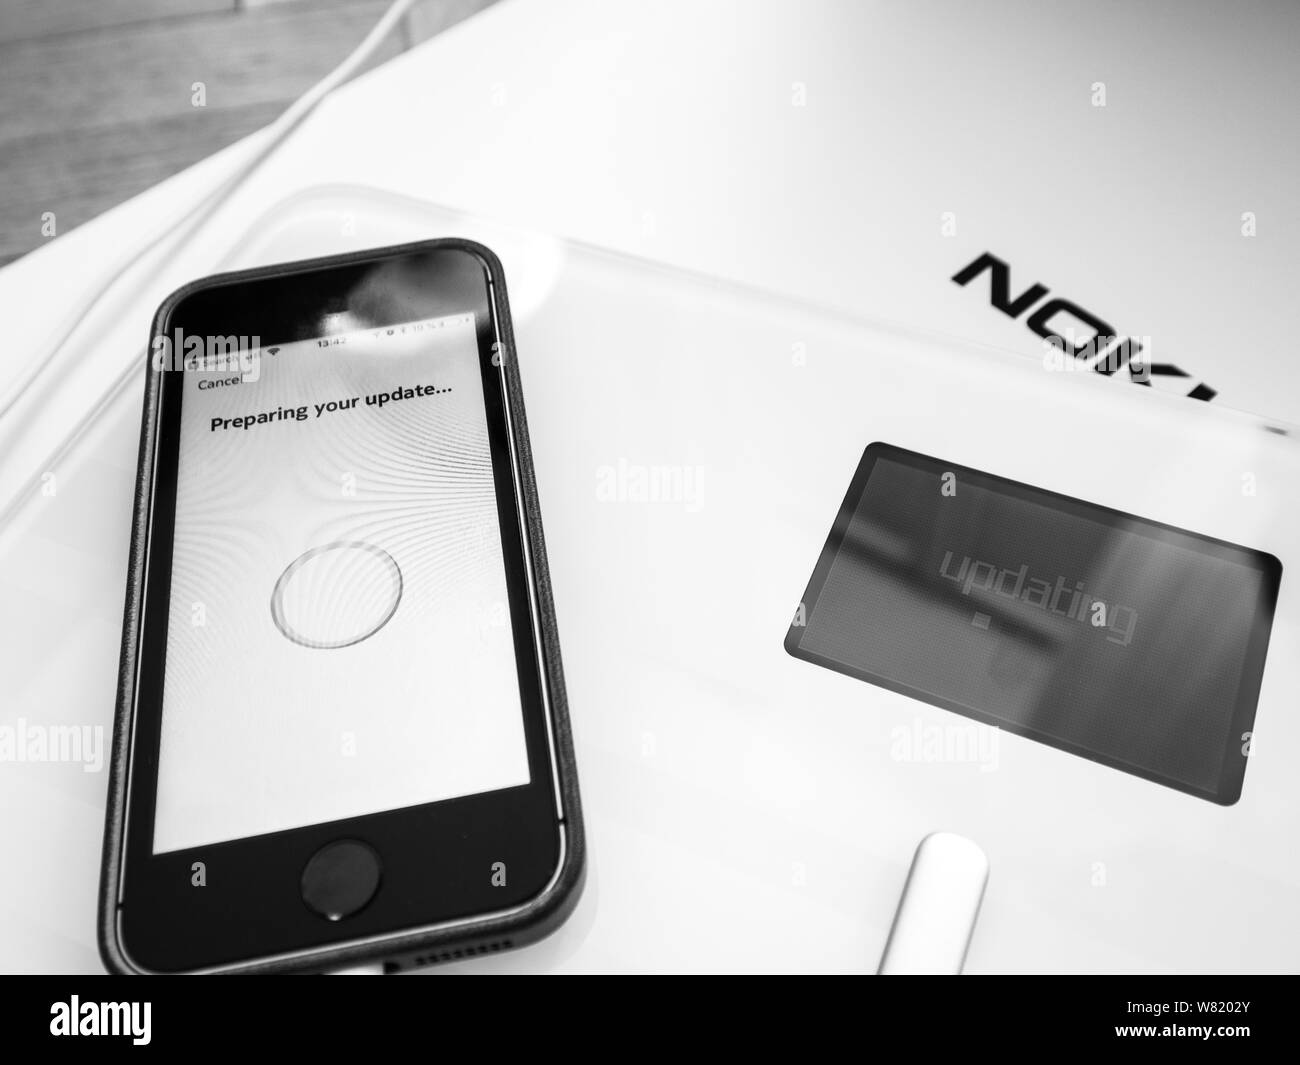 Parigi, Francia - 7 SET 2018: Unboxing e prima del processo di configurazione del nuovo Nokia corpo Withings Cardio smart impostazione della scala con il vicino allo smartphone iPhone preparare l'aggiornamento Foto Stock